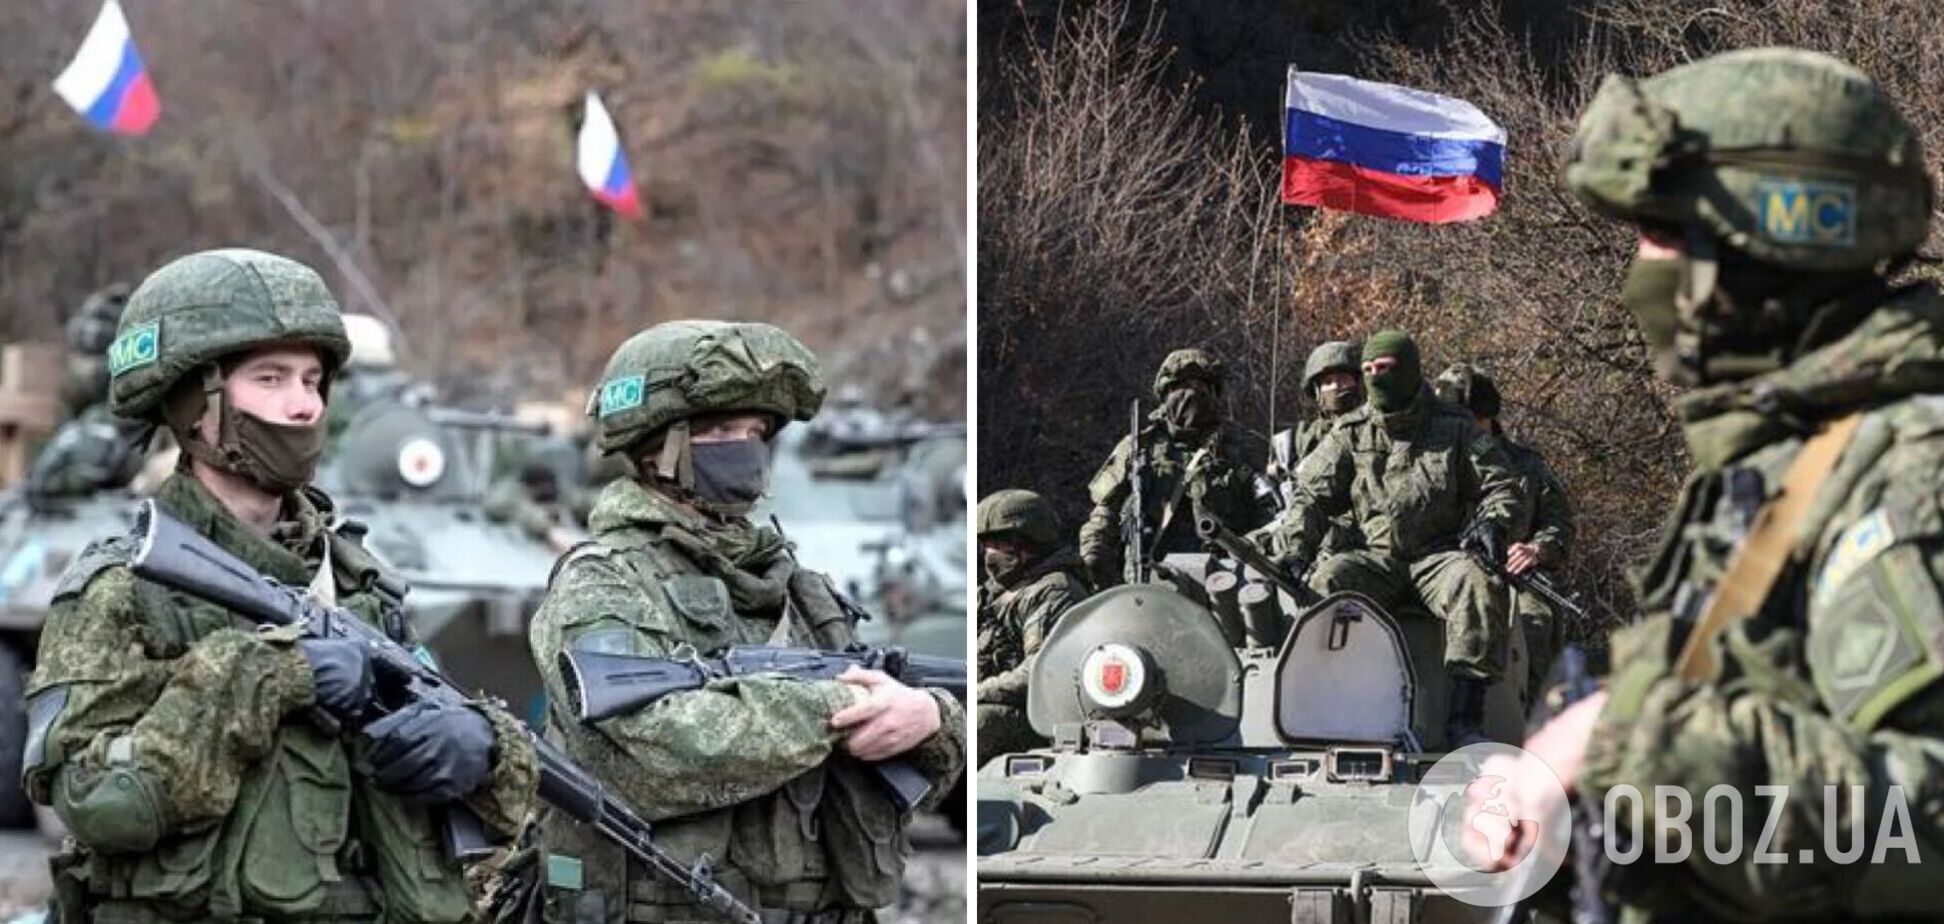 Командование российской армии начало 'бизнес' на собственных солдатах